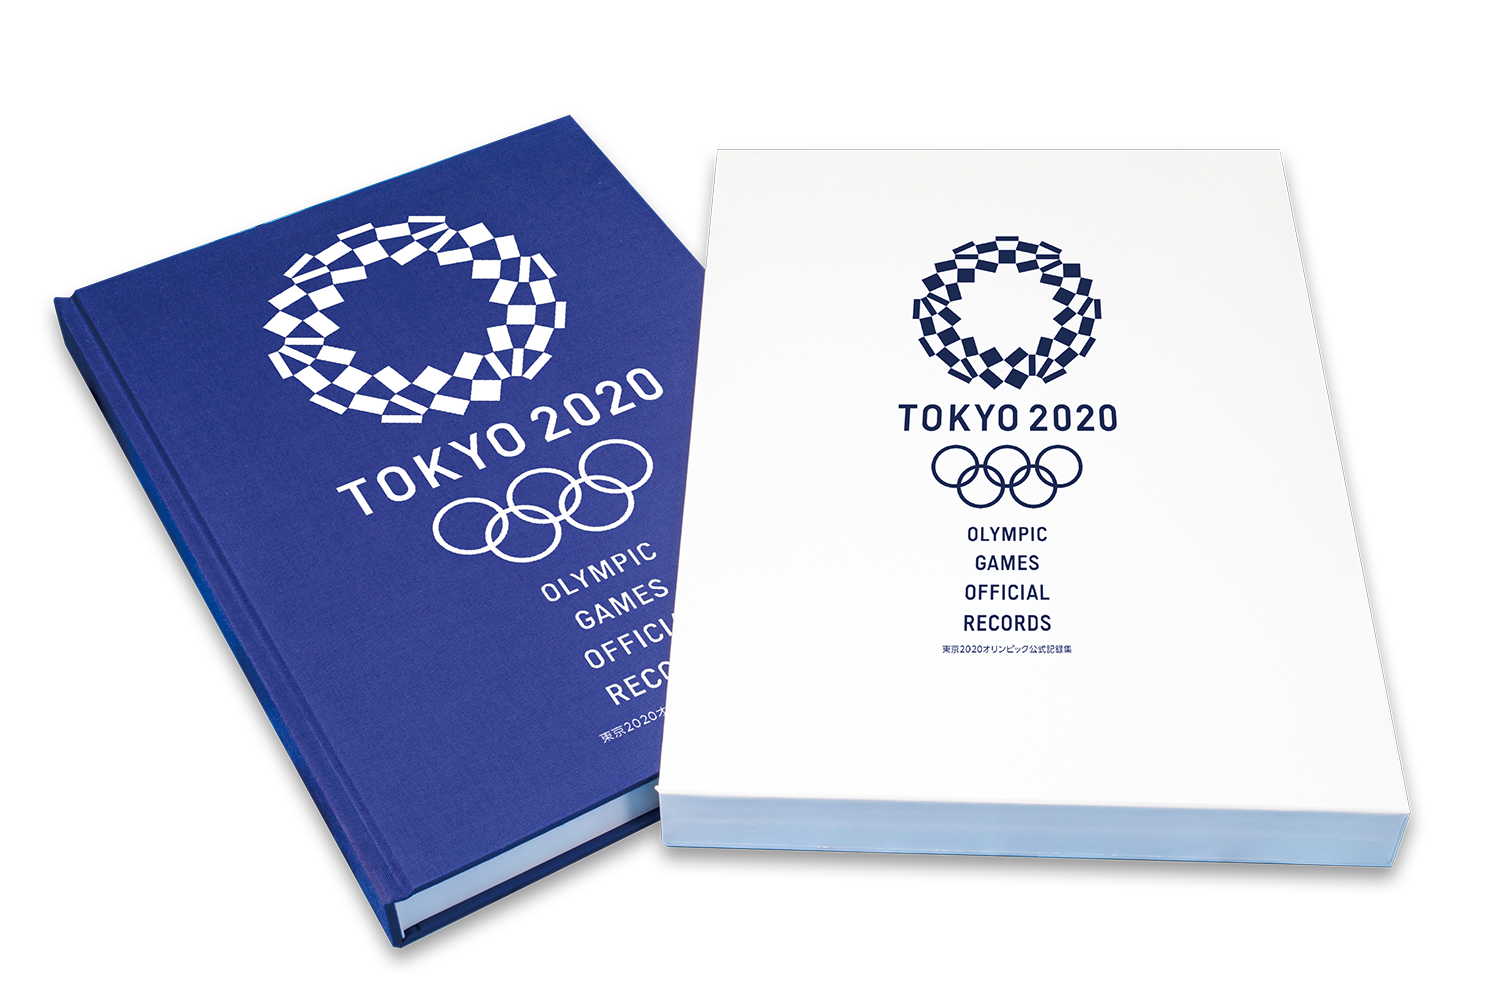 完全受注生産 日本代表選手団の活躍や記録を全て網羅した 東京オリンピック 公式記録集 が豪華上製本で登場 株式会社kadokawaのプレスリリース